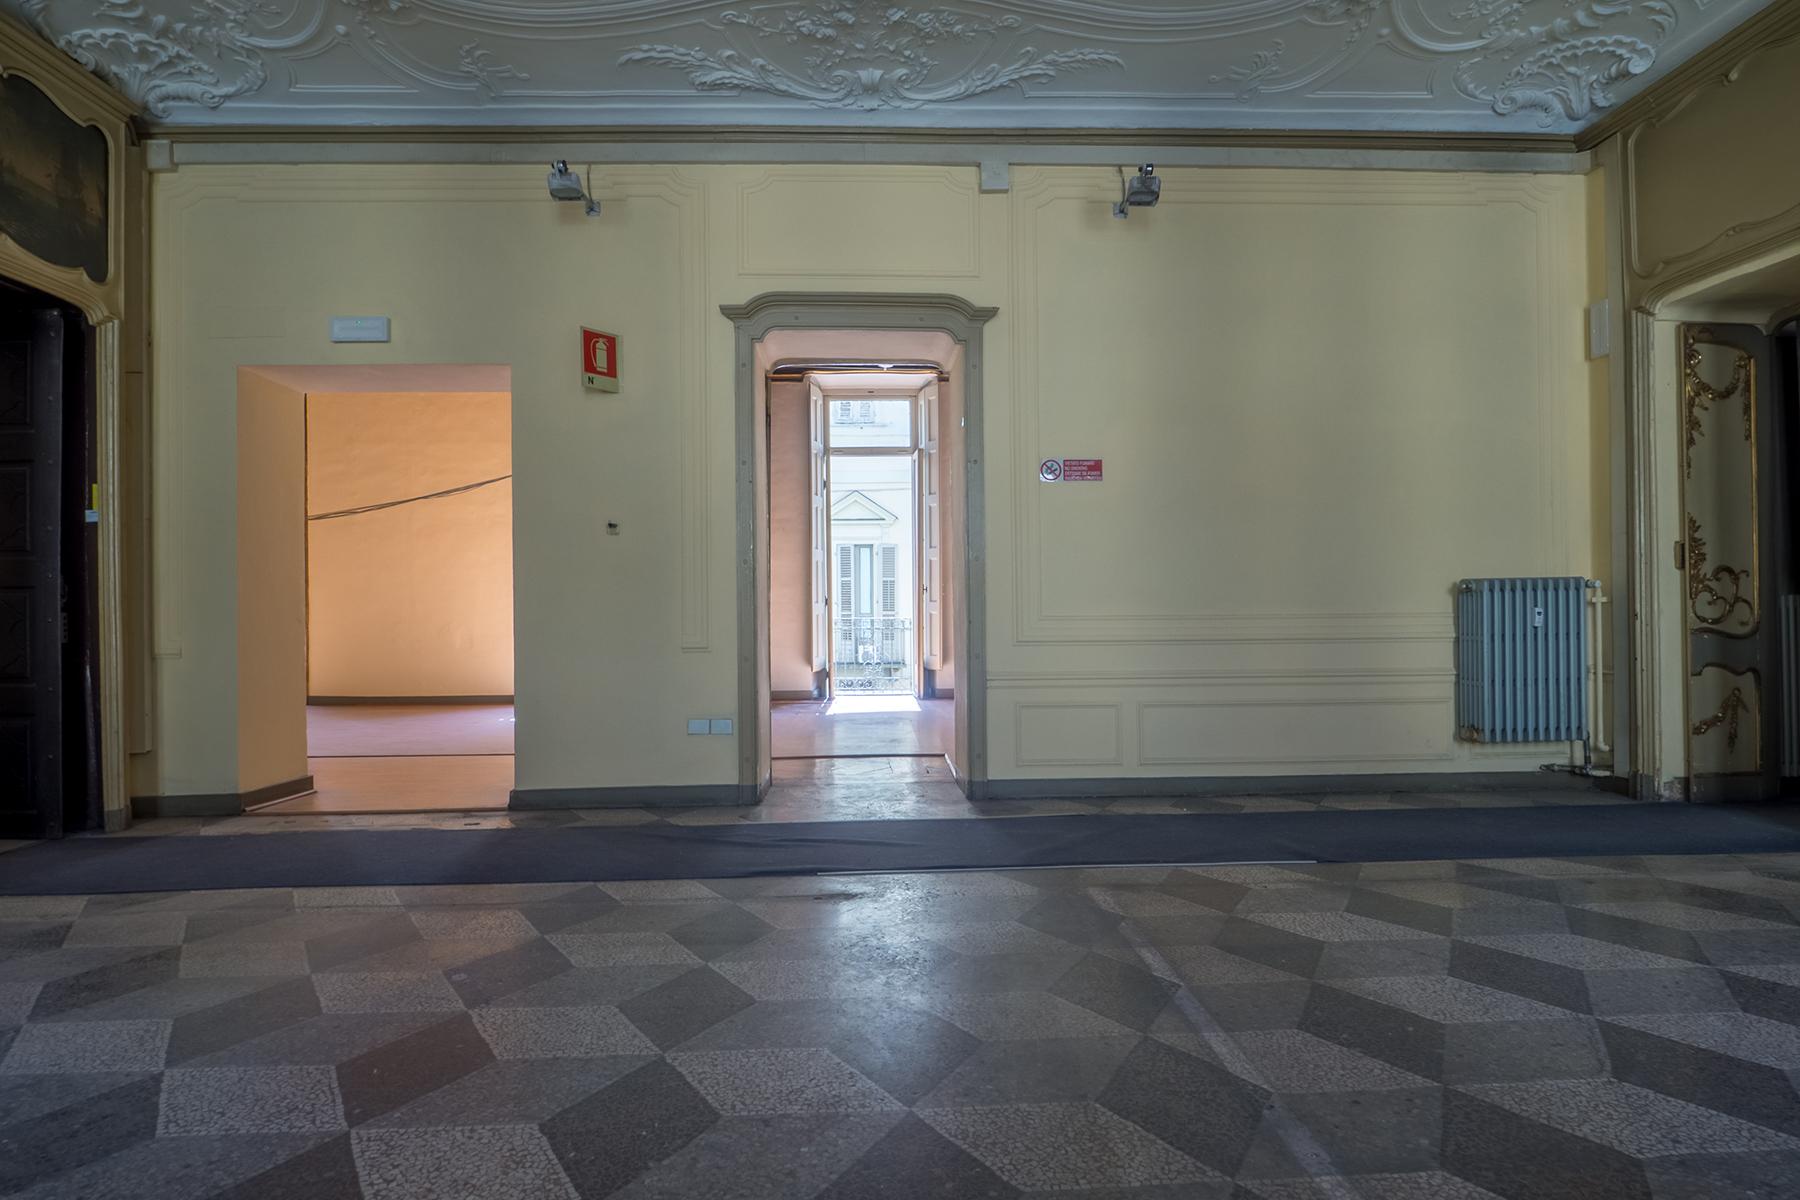 Ufficio di alta rappresentanza nel centro storico di Torino - 16